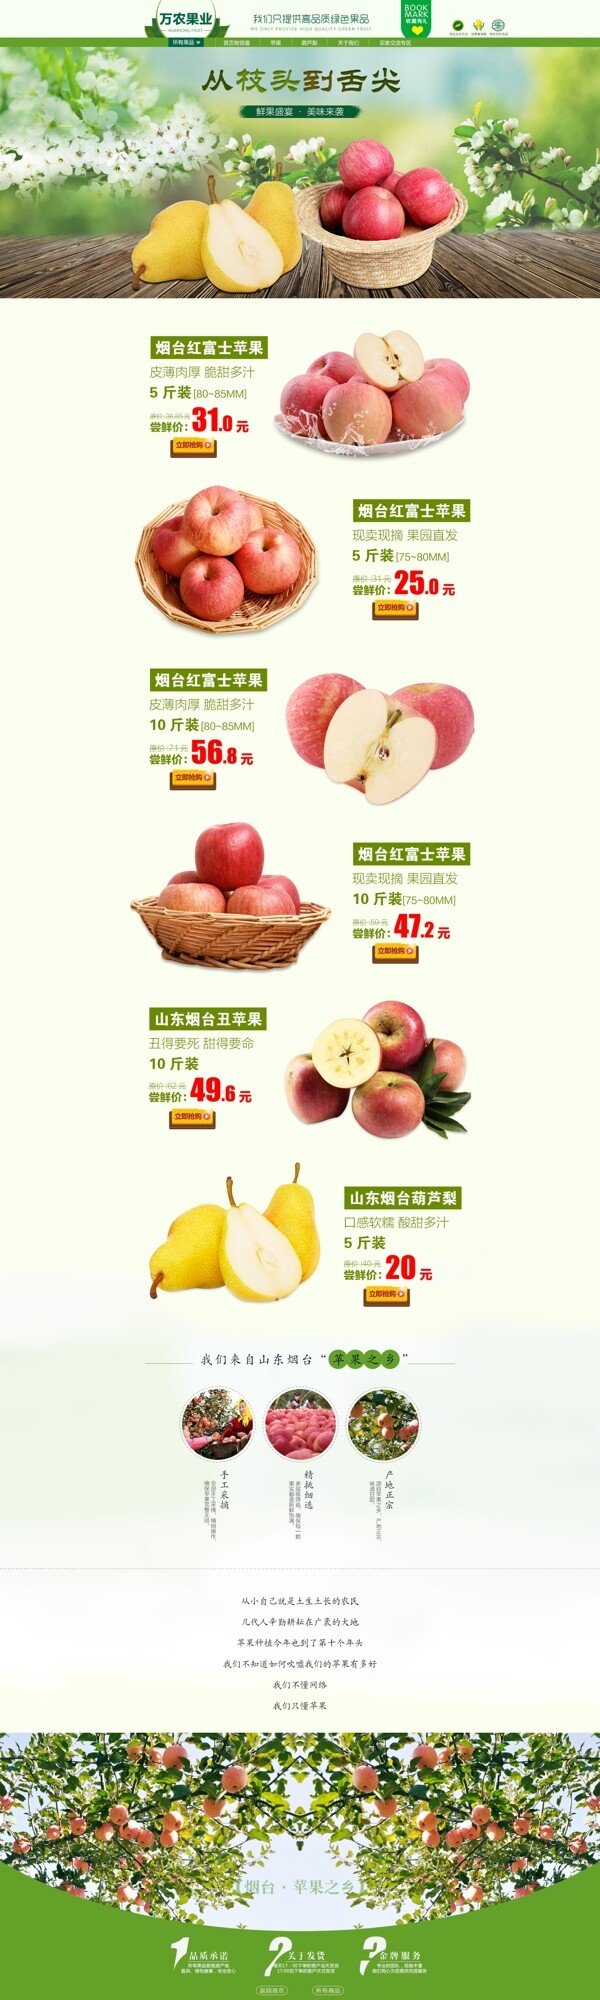 水果首页设计苹果新鲜直达从枝头到舌尖